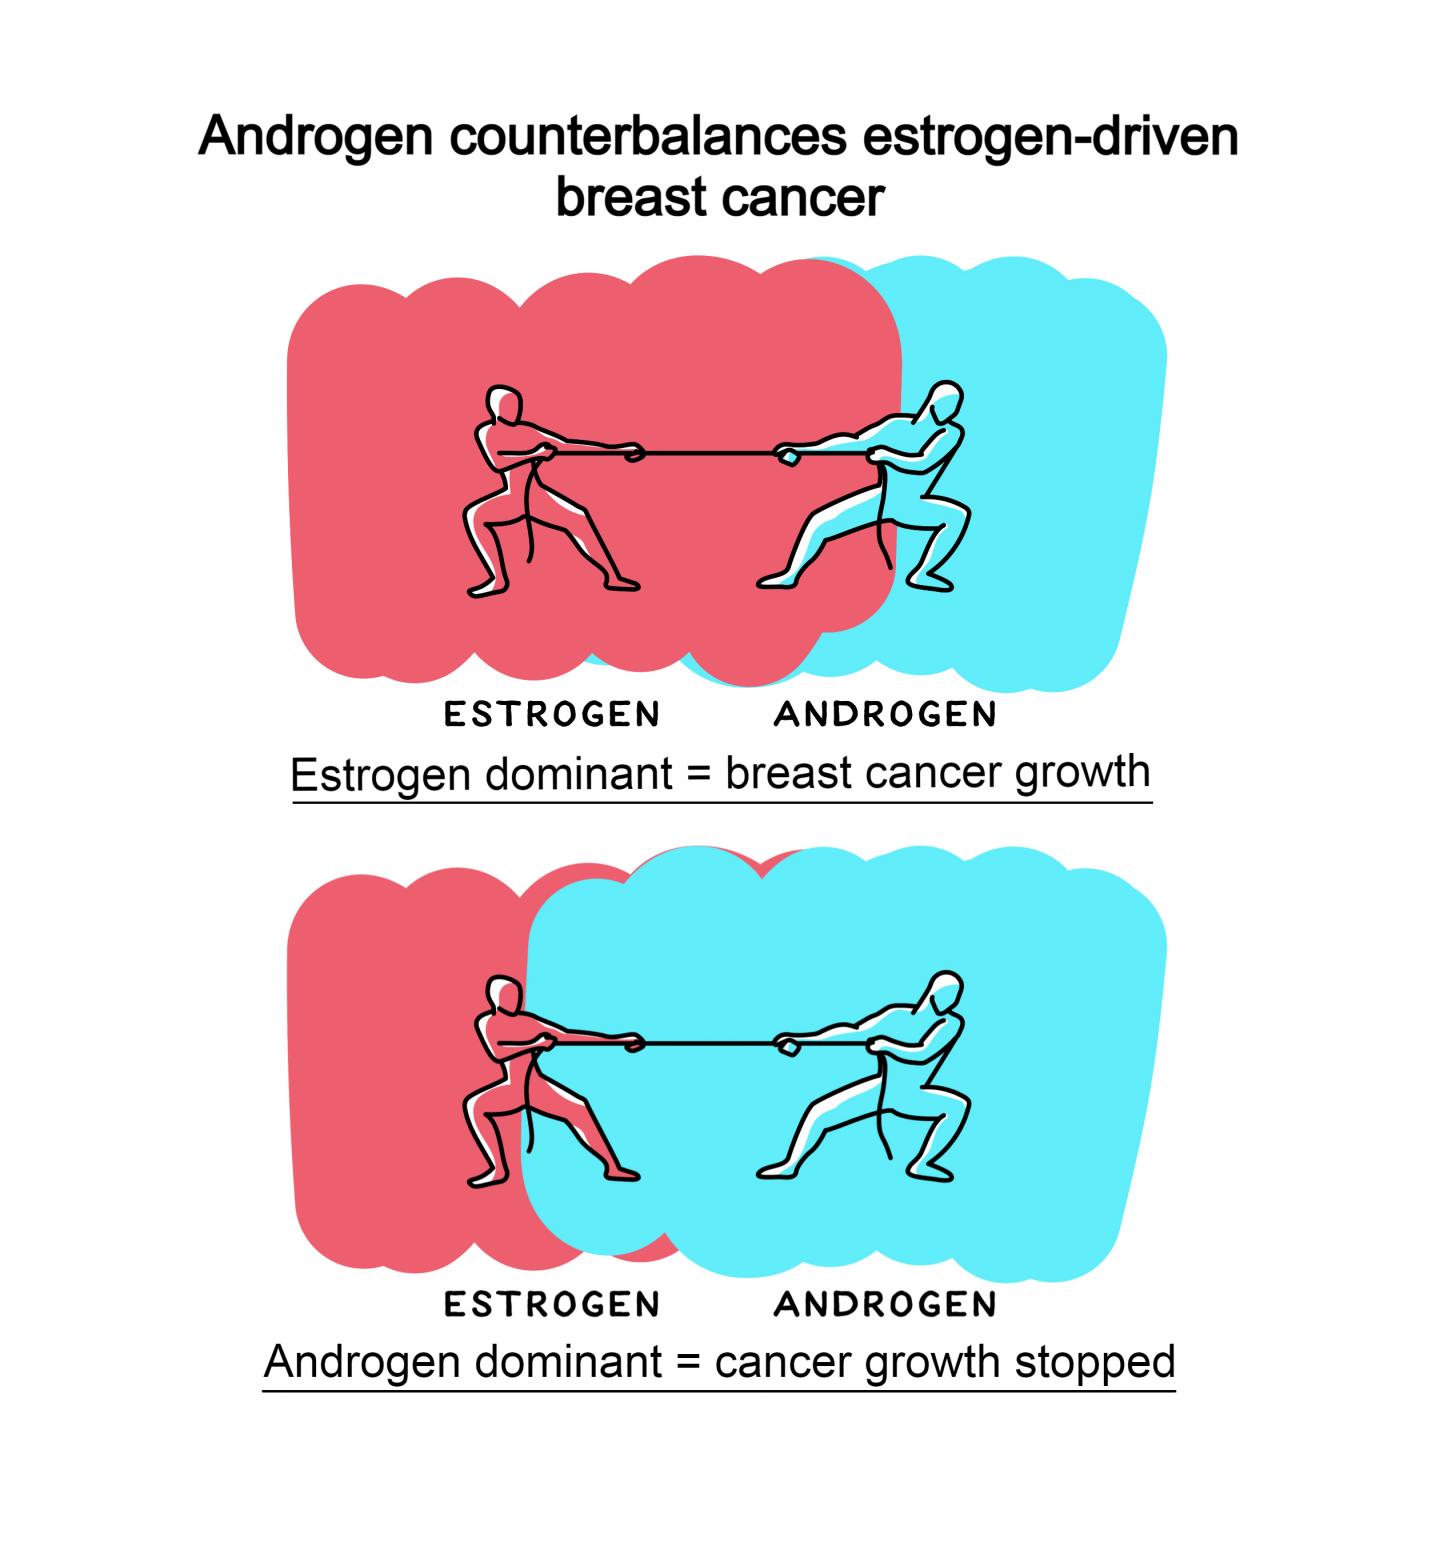 Androgen counterbalances estrogen-driven breast cancer